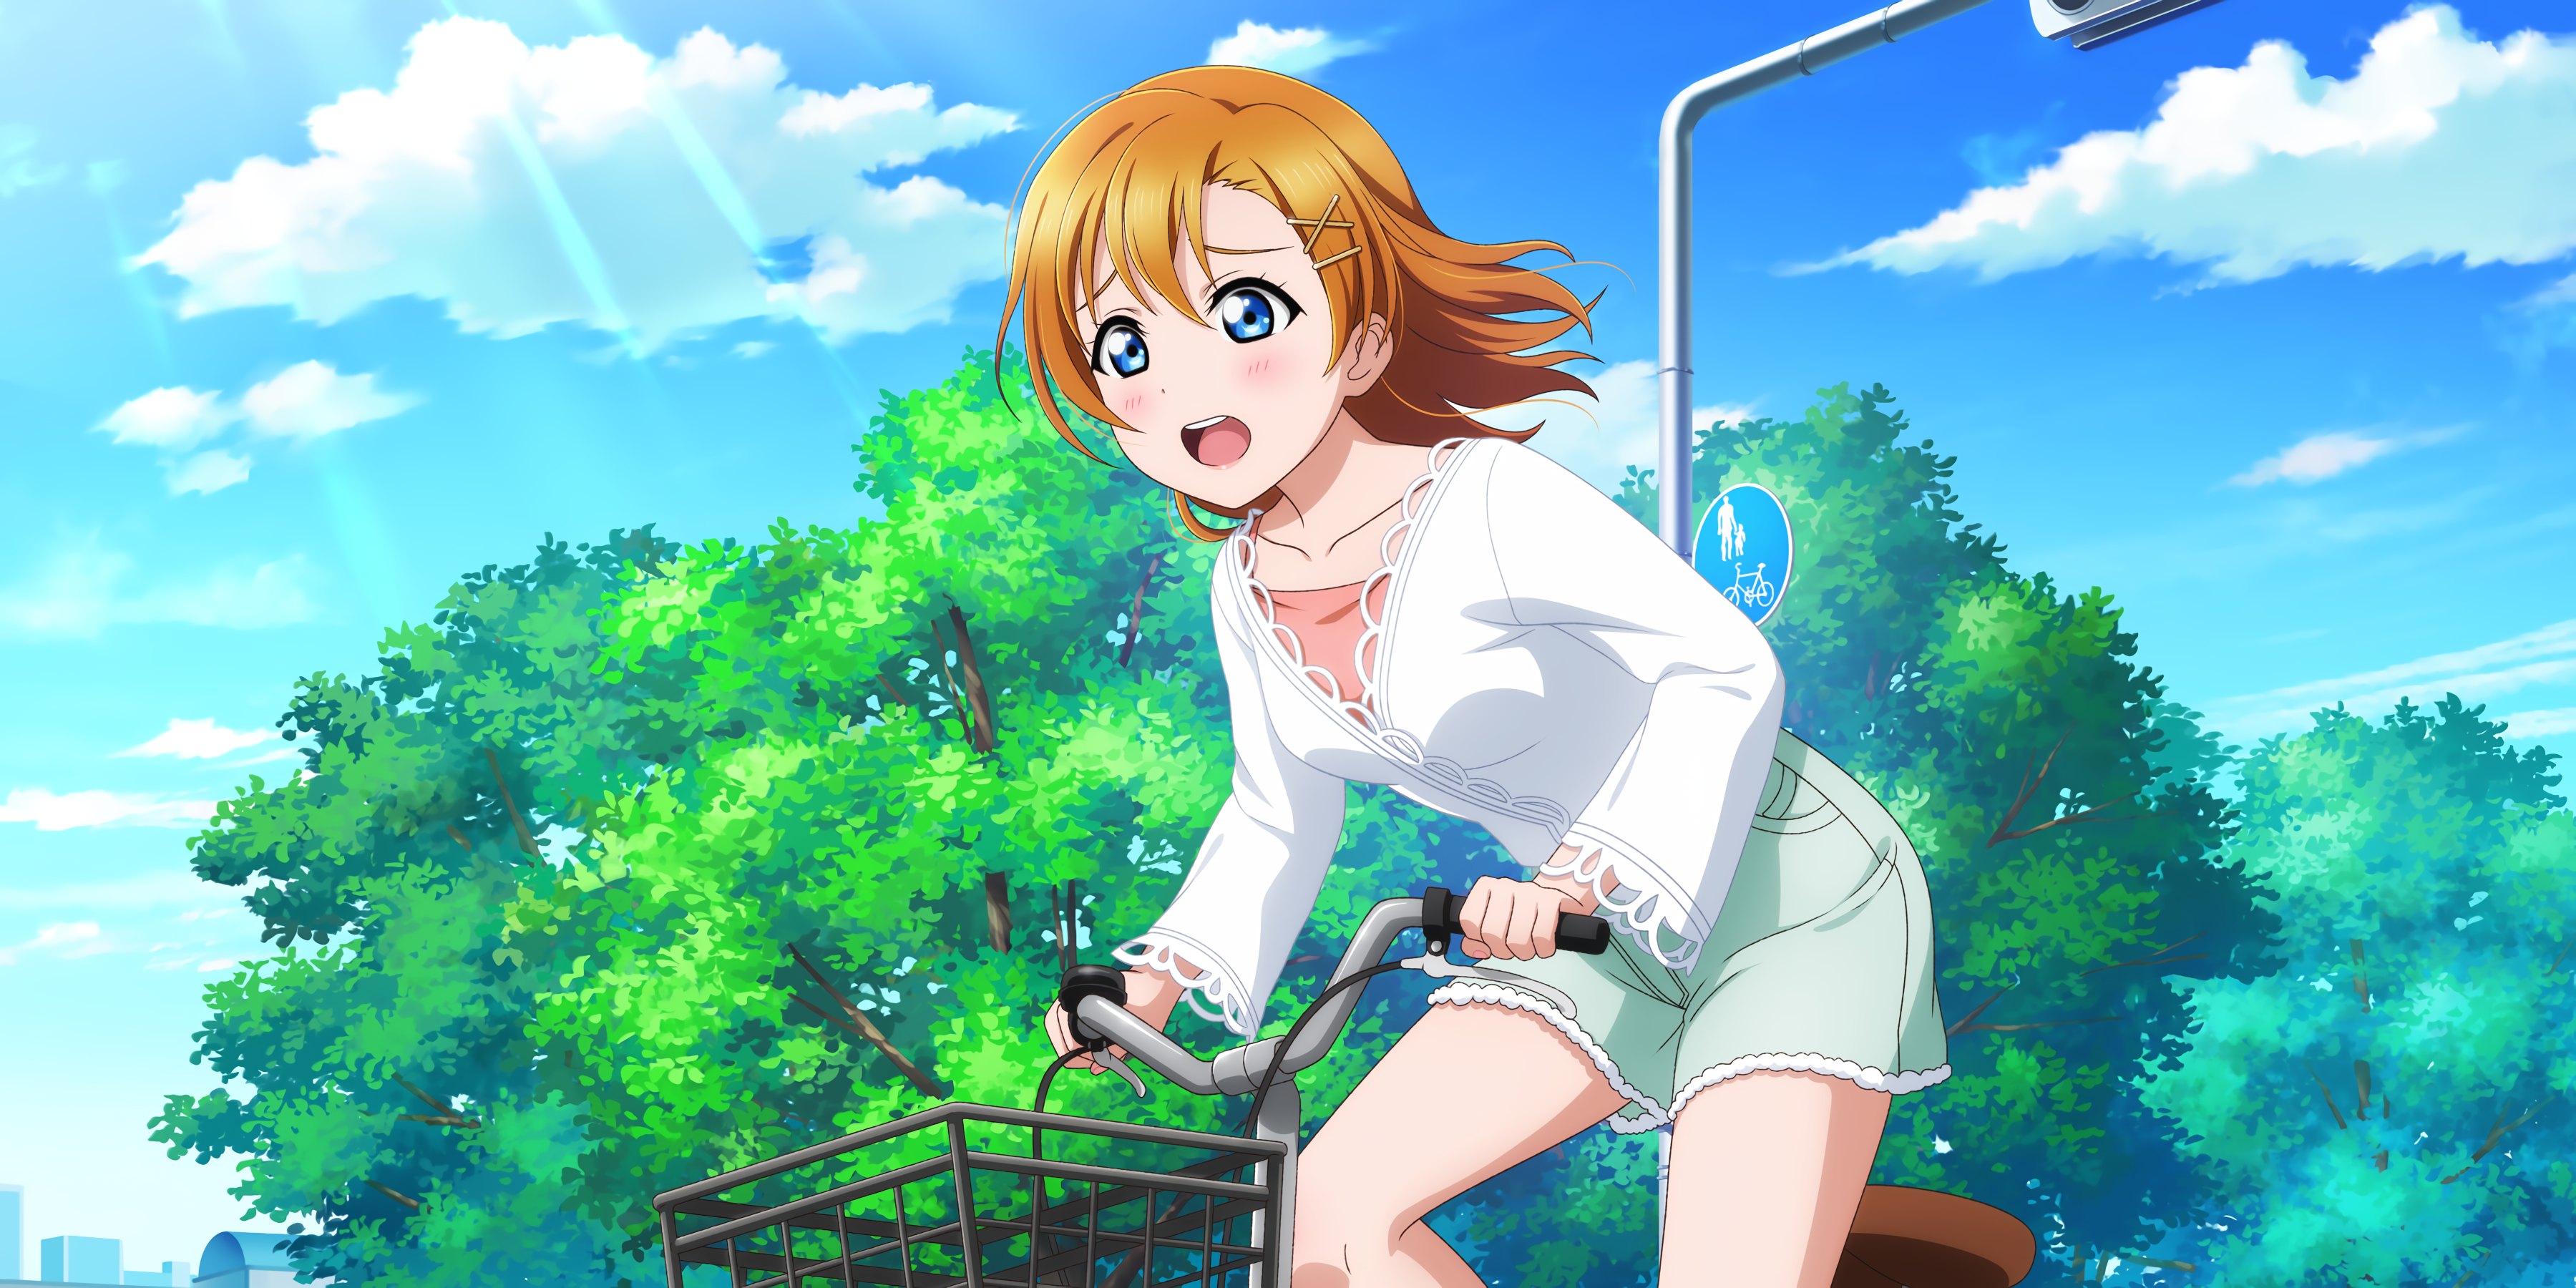 Kousaka Honoka Love Live Anime Girls Anime Sunlight Bicycle Clouds Sky Short Hair Short Shorts Trees 3600x1800